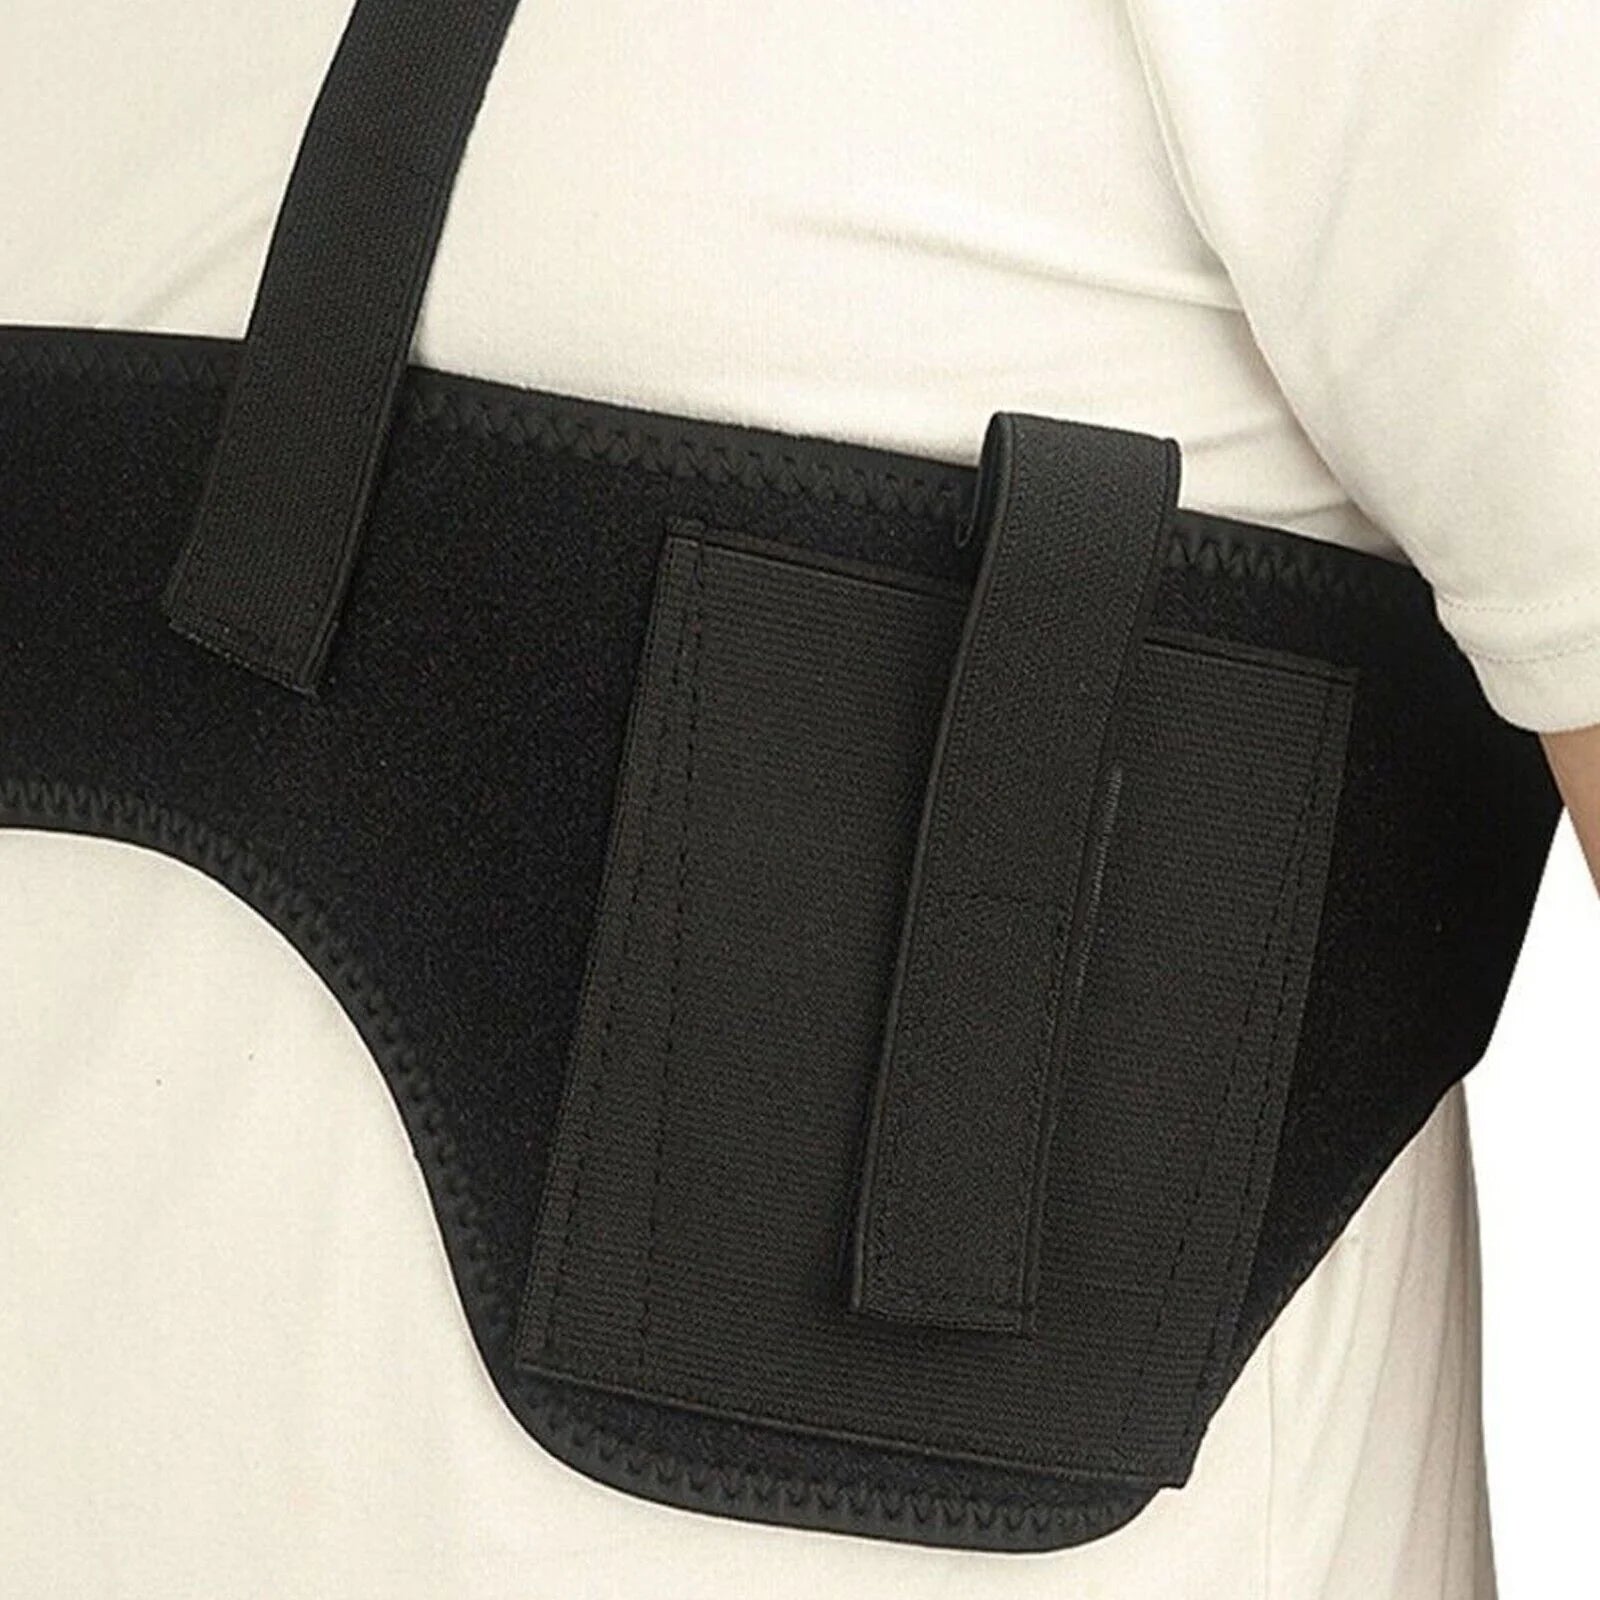 StealthFlex Concealed Carry Holster - Shoulder & Waist